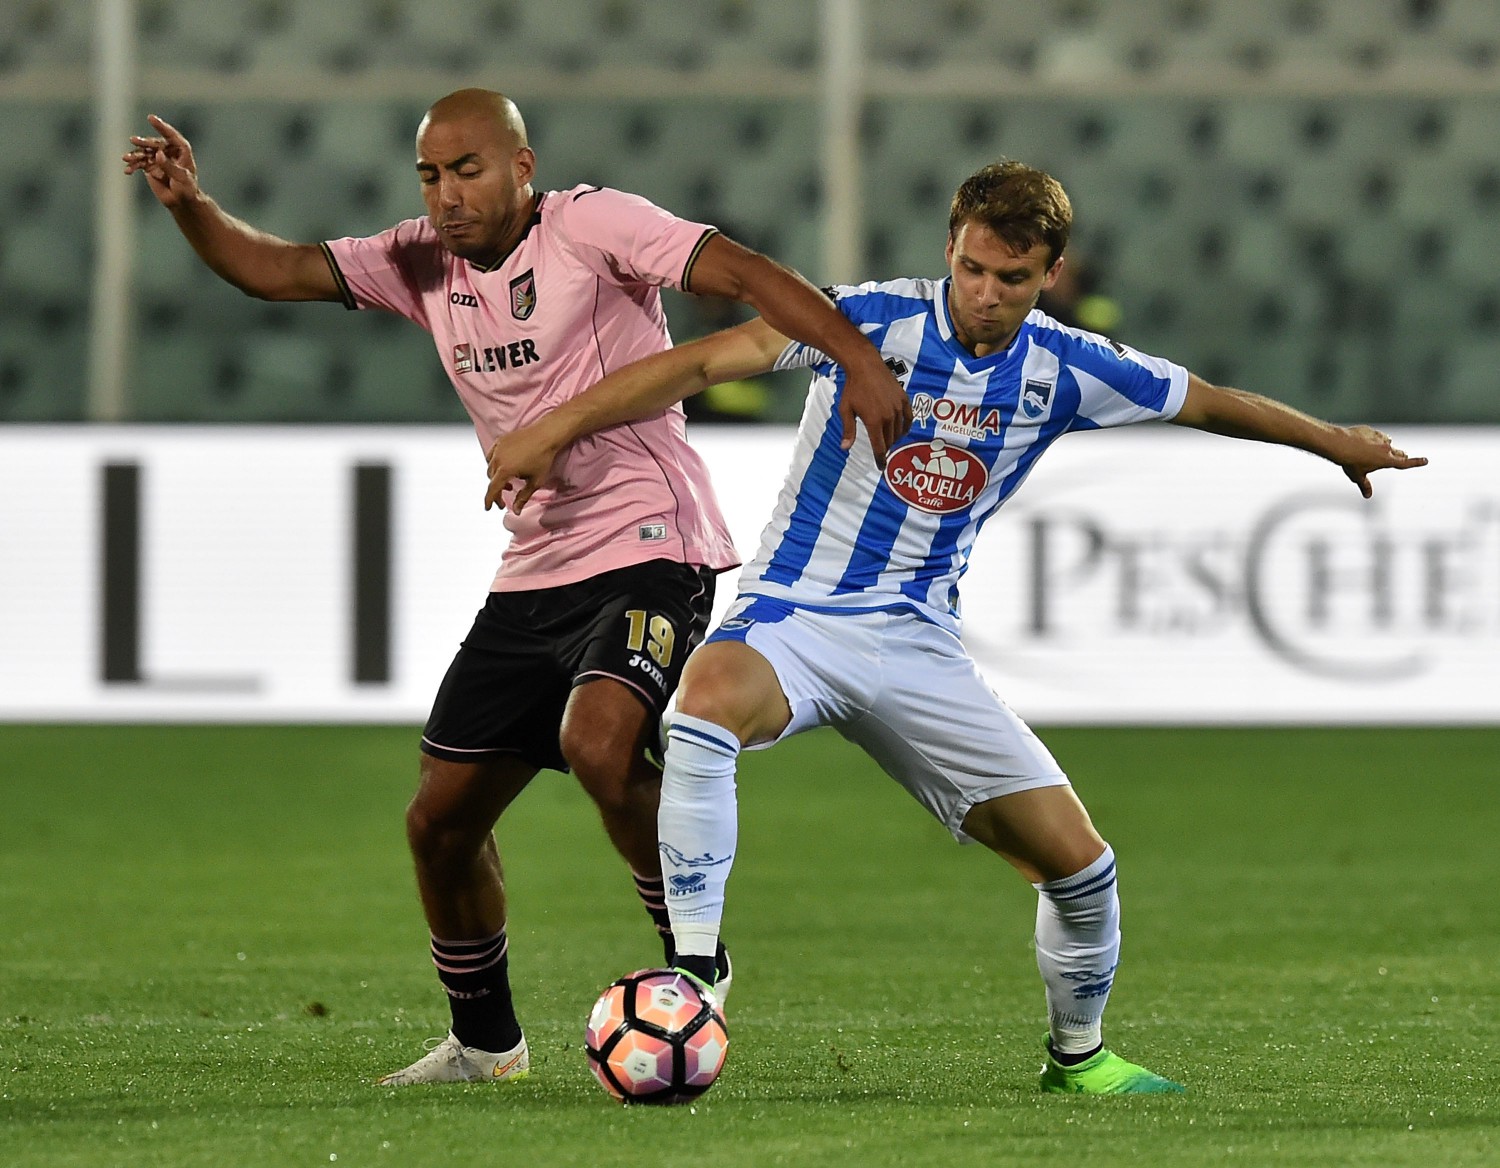 Il Pescara chiude con una vittoria in casa: il Palermo va ko 2-0